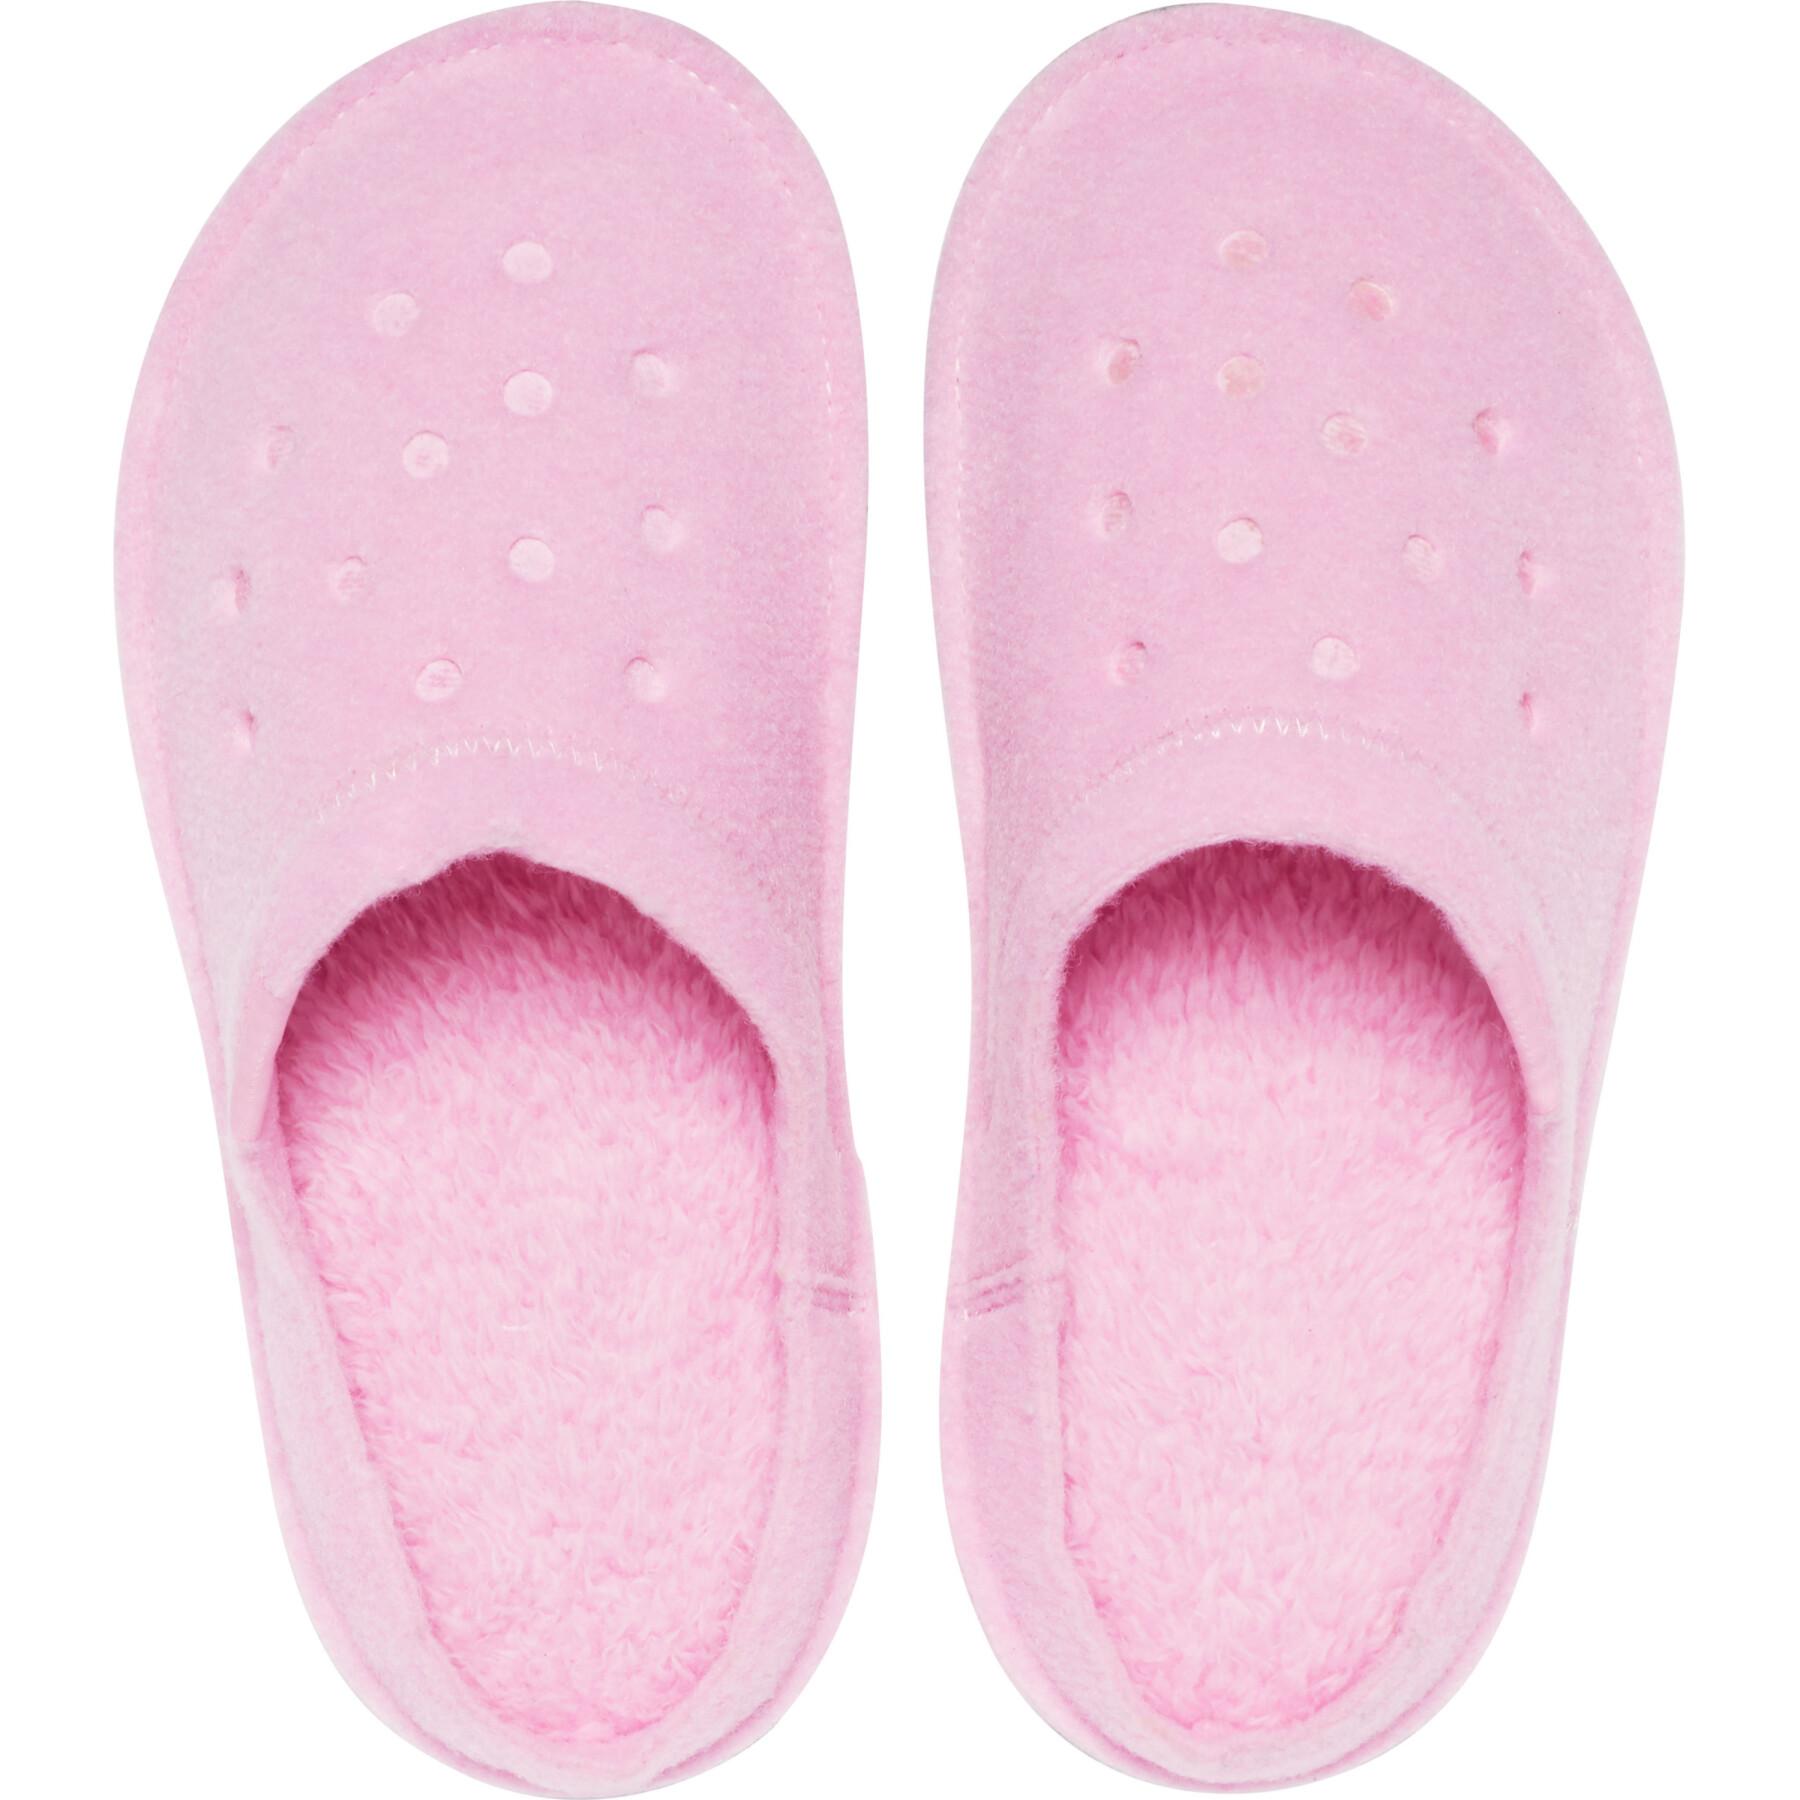 Classic slippers Crocs